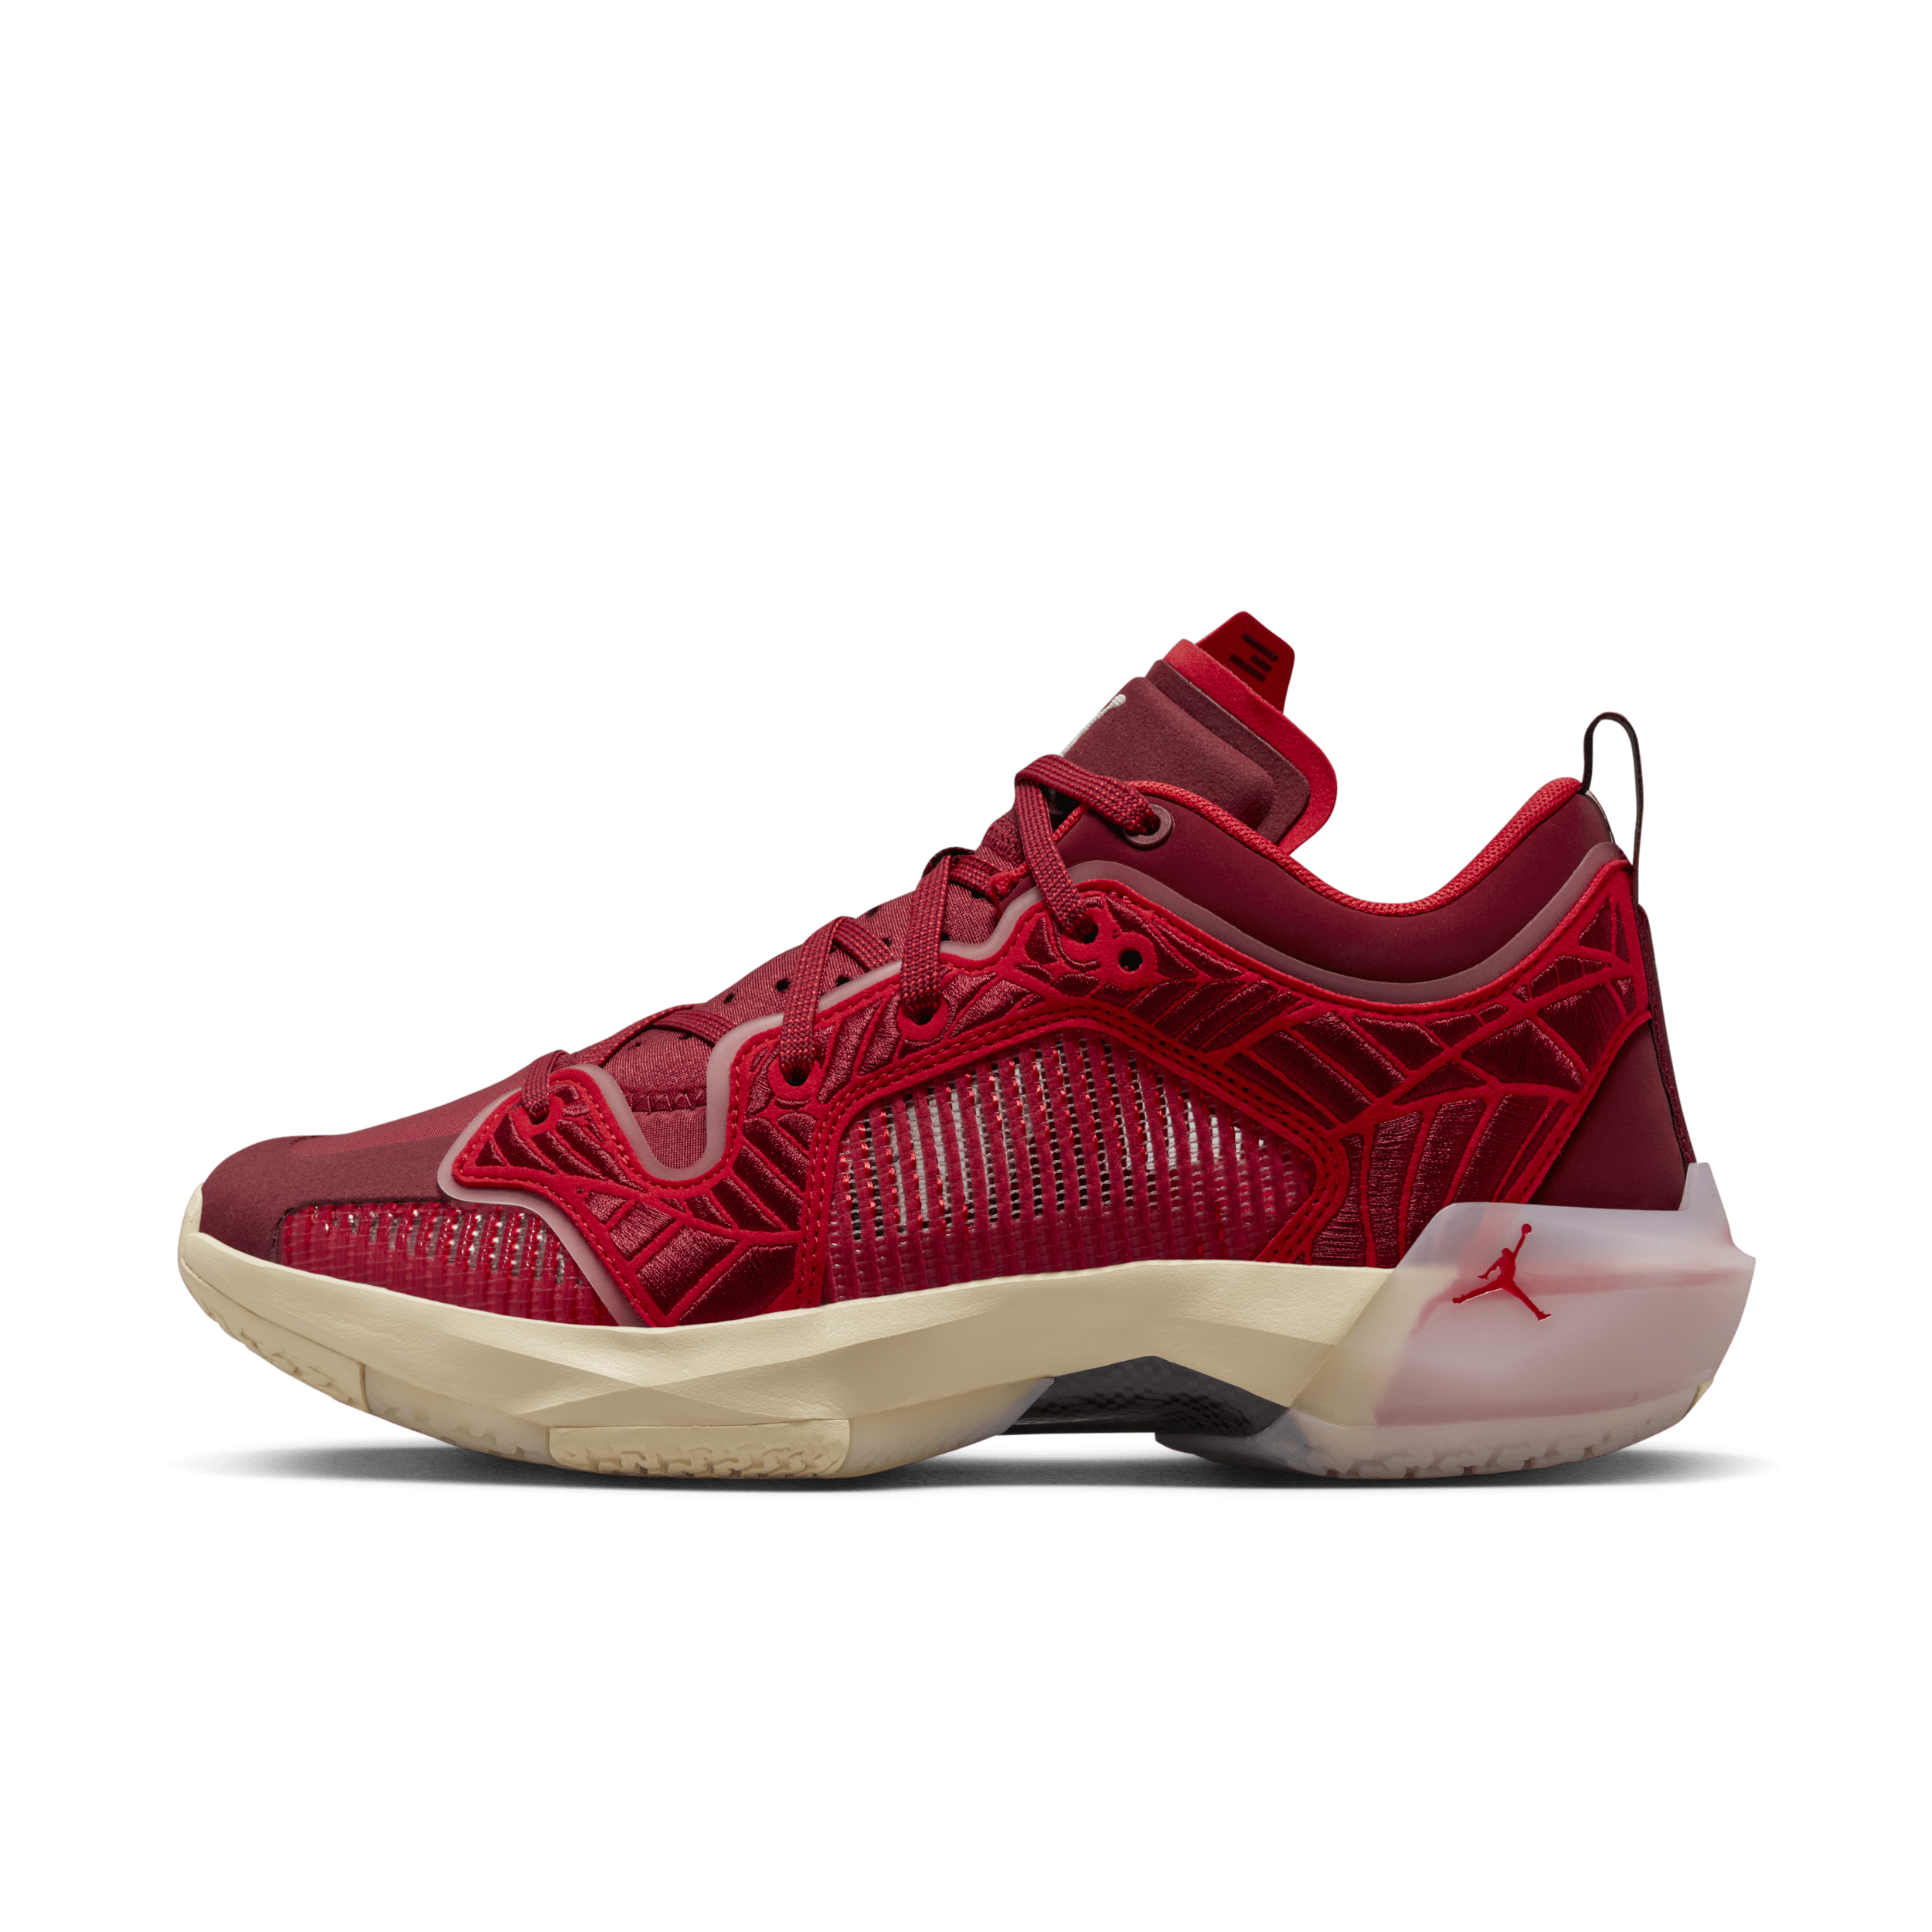 Air Jordan XXXVII Low- basketballsko til kvinder - rød